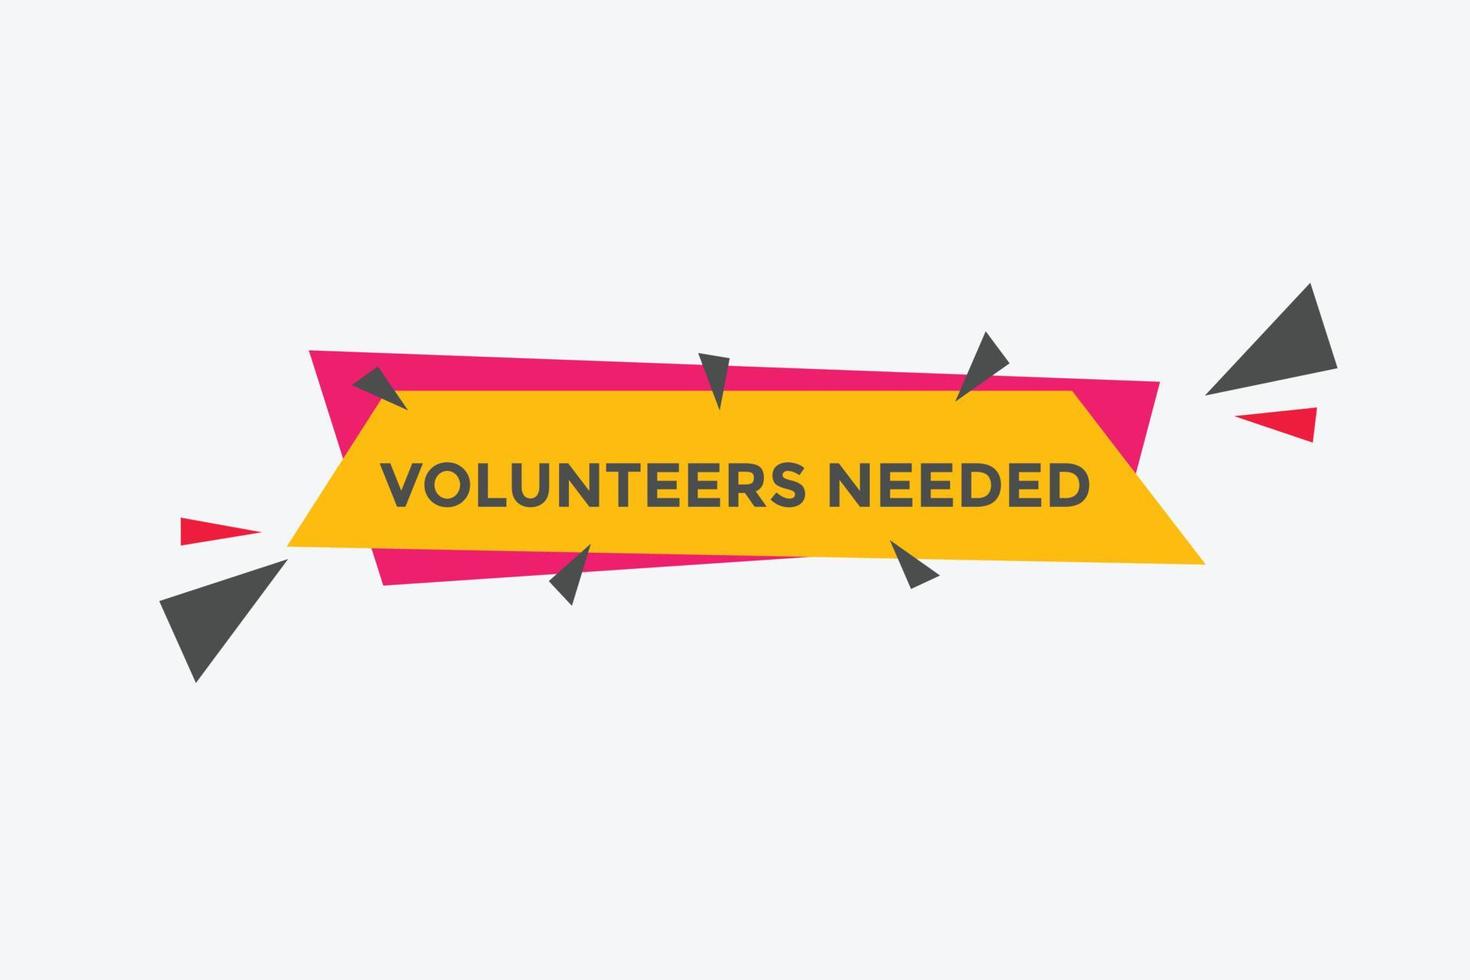 voluntários necessários botão. balão de fala. modelo de banner da web necessário voluntário. ilustração vetorial. vetor